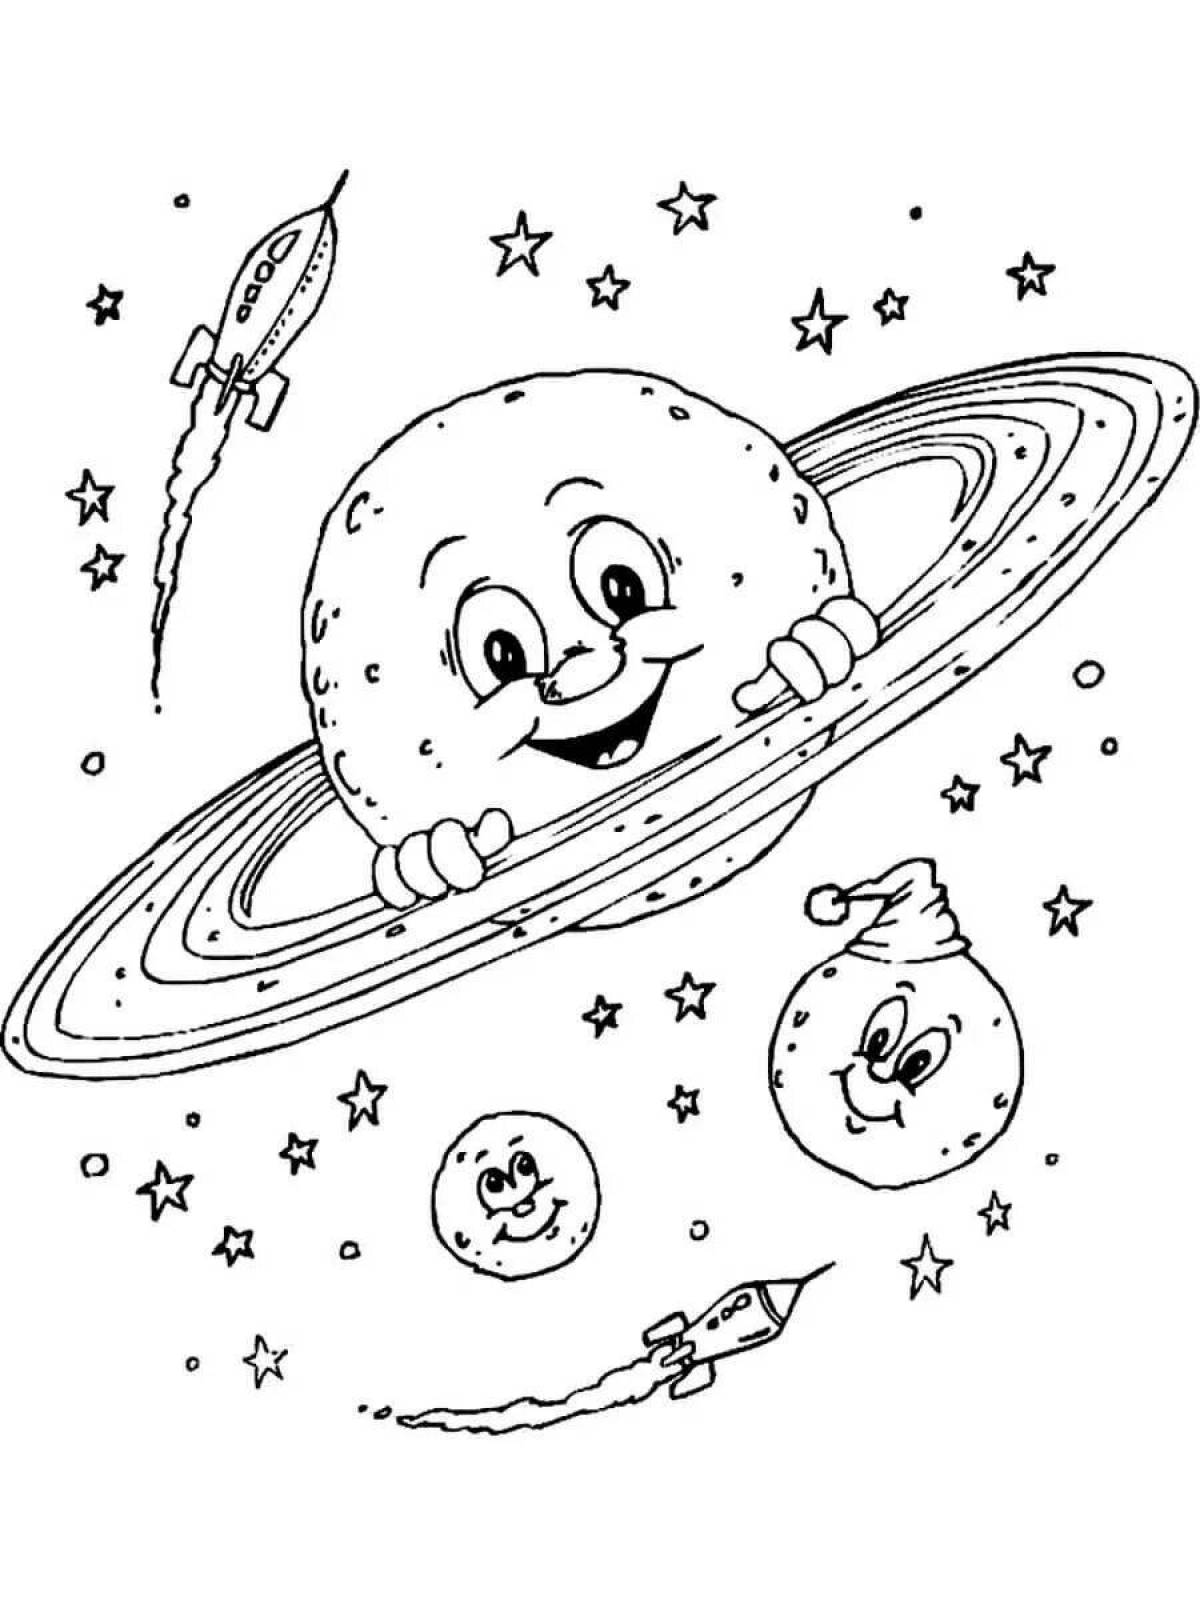 Детские раскраски ко дню космонавтики. Космос раскраска для детей. Раскраска. В космосе. Раскраска космос и планеты для детей. Раскраска на тему космос для детей.